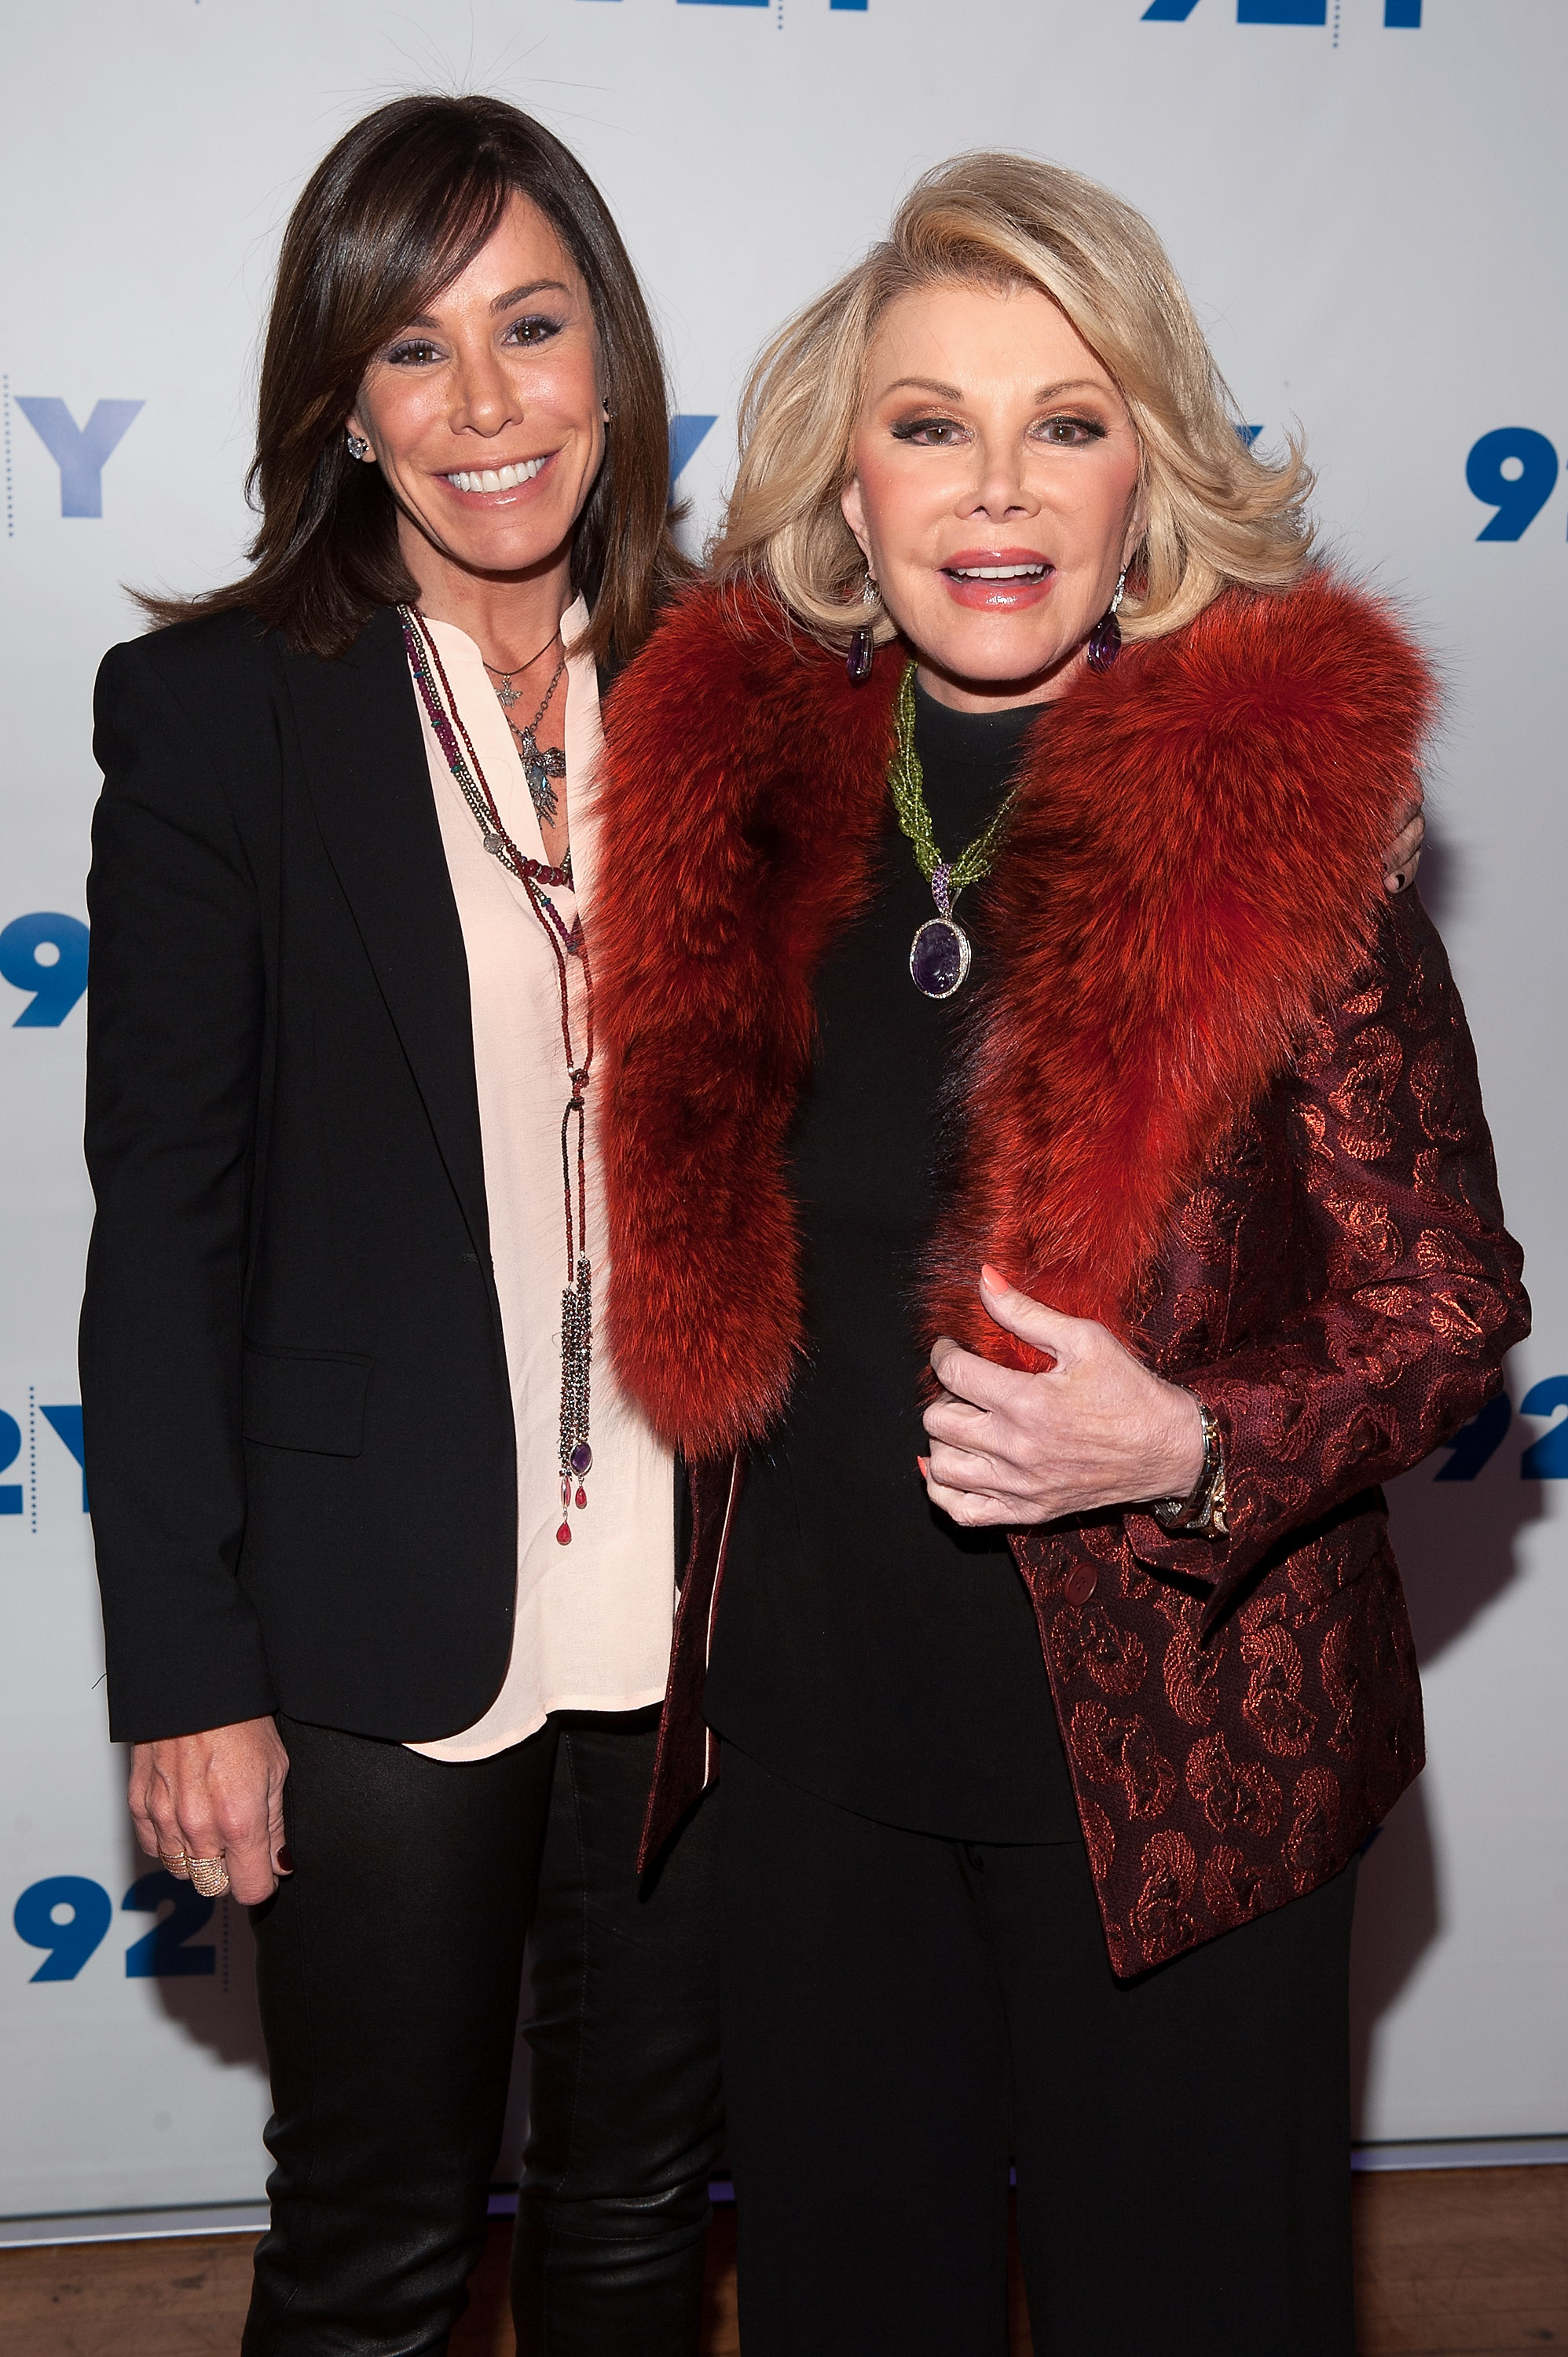 Joan y Melissa Rivers asisten a An Evening With Joan And Melissa Rivers en el 92nd Street Y de Nueva York, el 22 de enero de 2014. | Fuente: Getty Images